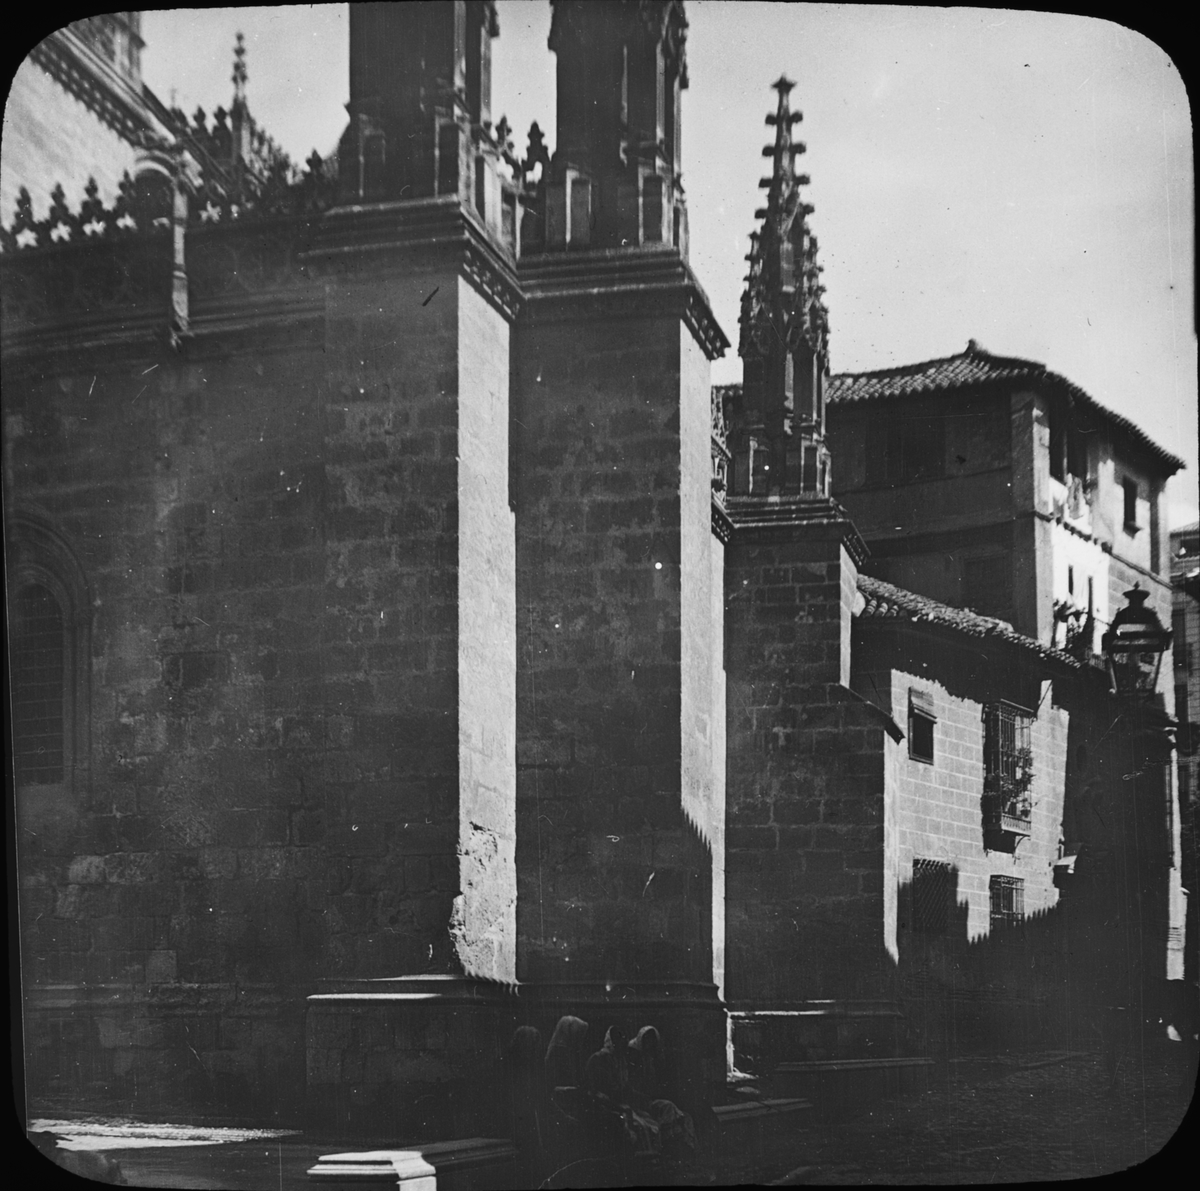 Skioptikonbild med motiv av Katedralen i Granada.
Bilden har förvarats i kartong märkt: Höstresan 1910. Granada 9. No 9. Text på bild: "Katedralen".